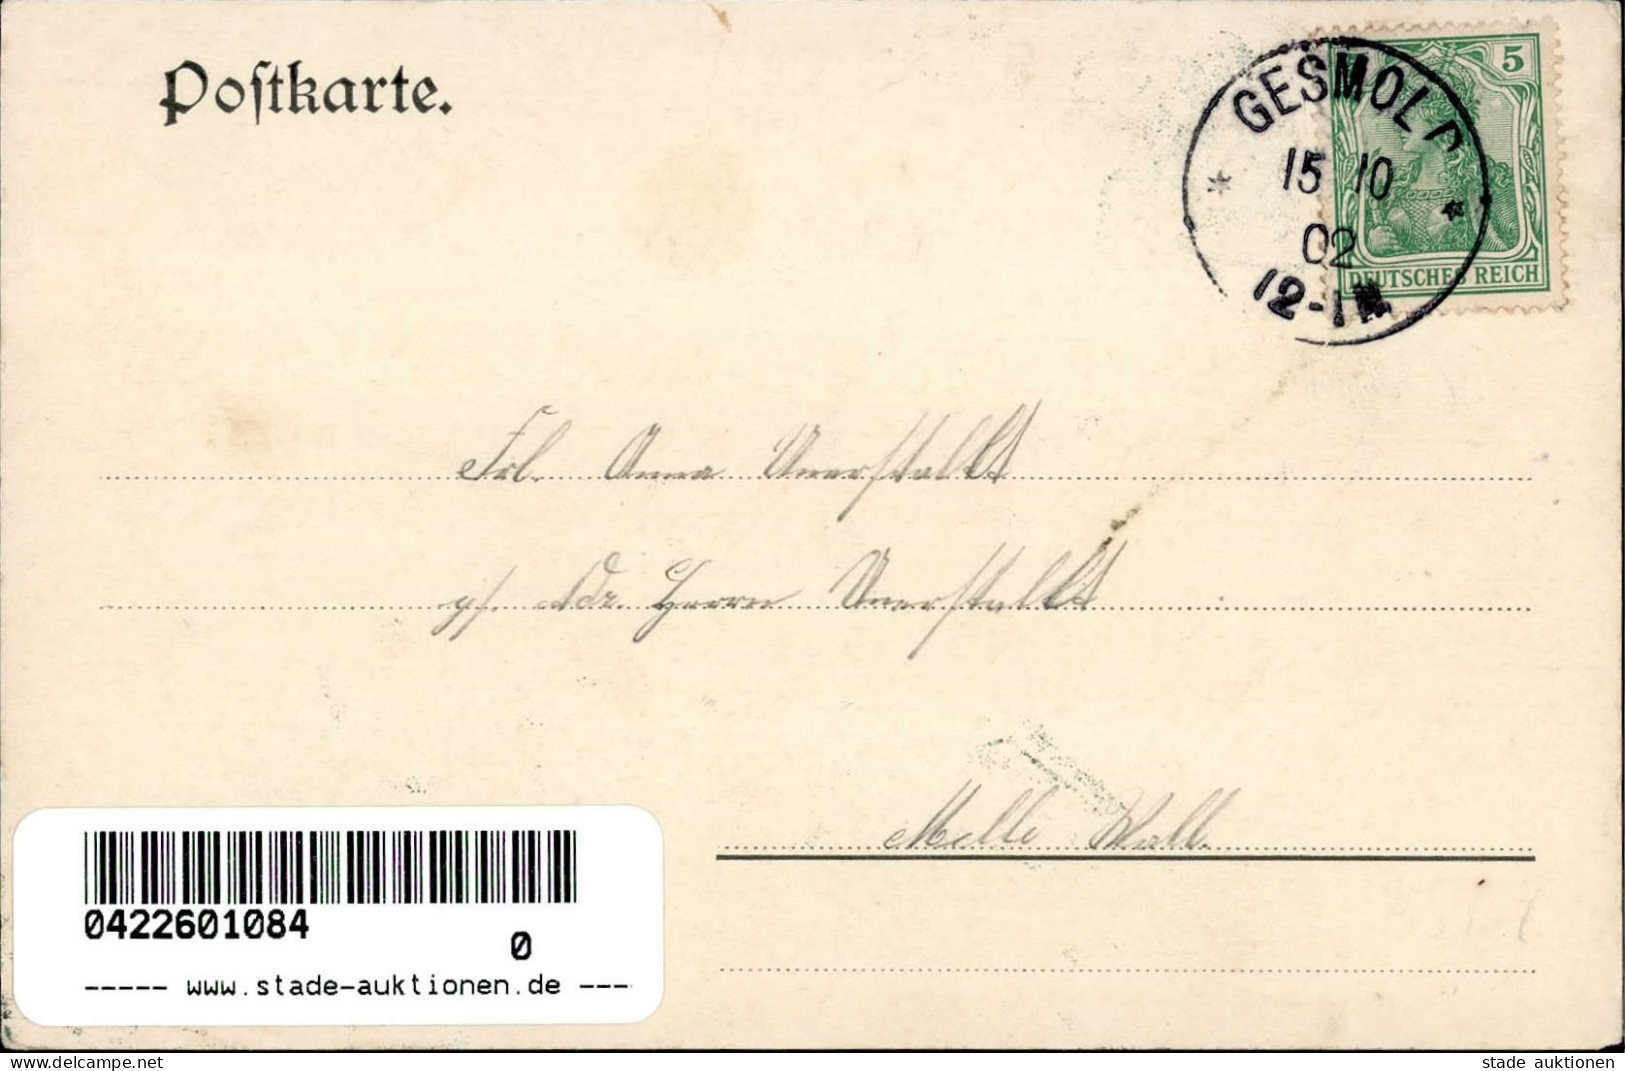 Gesmold Schimm (4520) Gasthaus Zum Schimm 1902 I- - Other & Unclassified